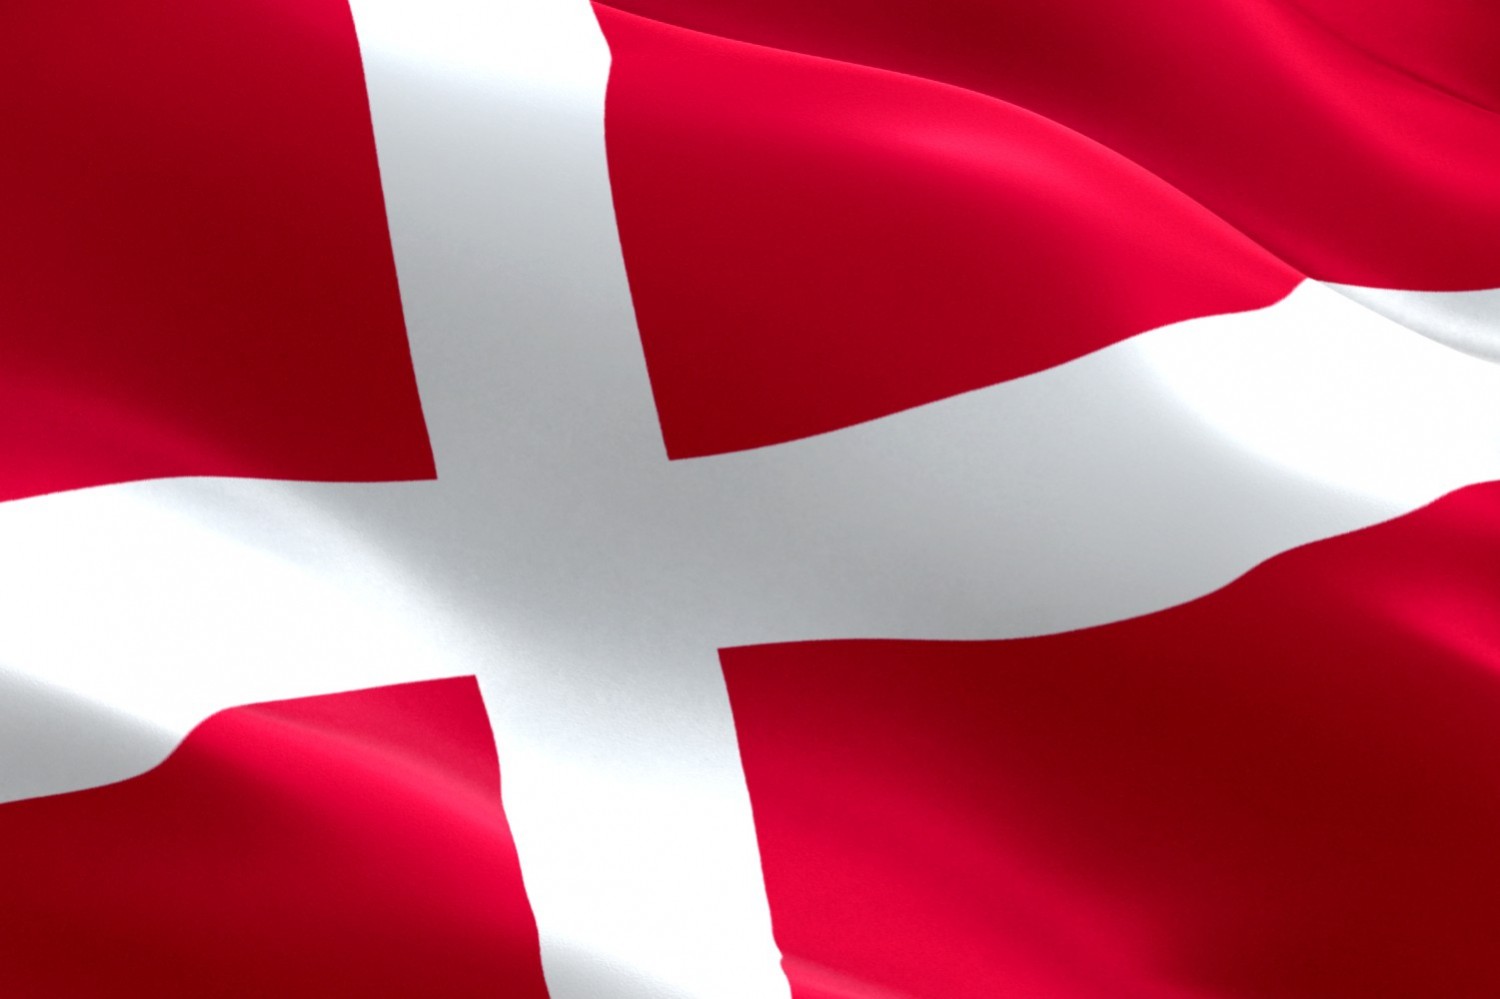 Dania chciała zaprotestować przeciwko łamaniu praw człowieka w Katarze. FIFA powiedziała „nie”